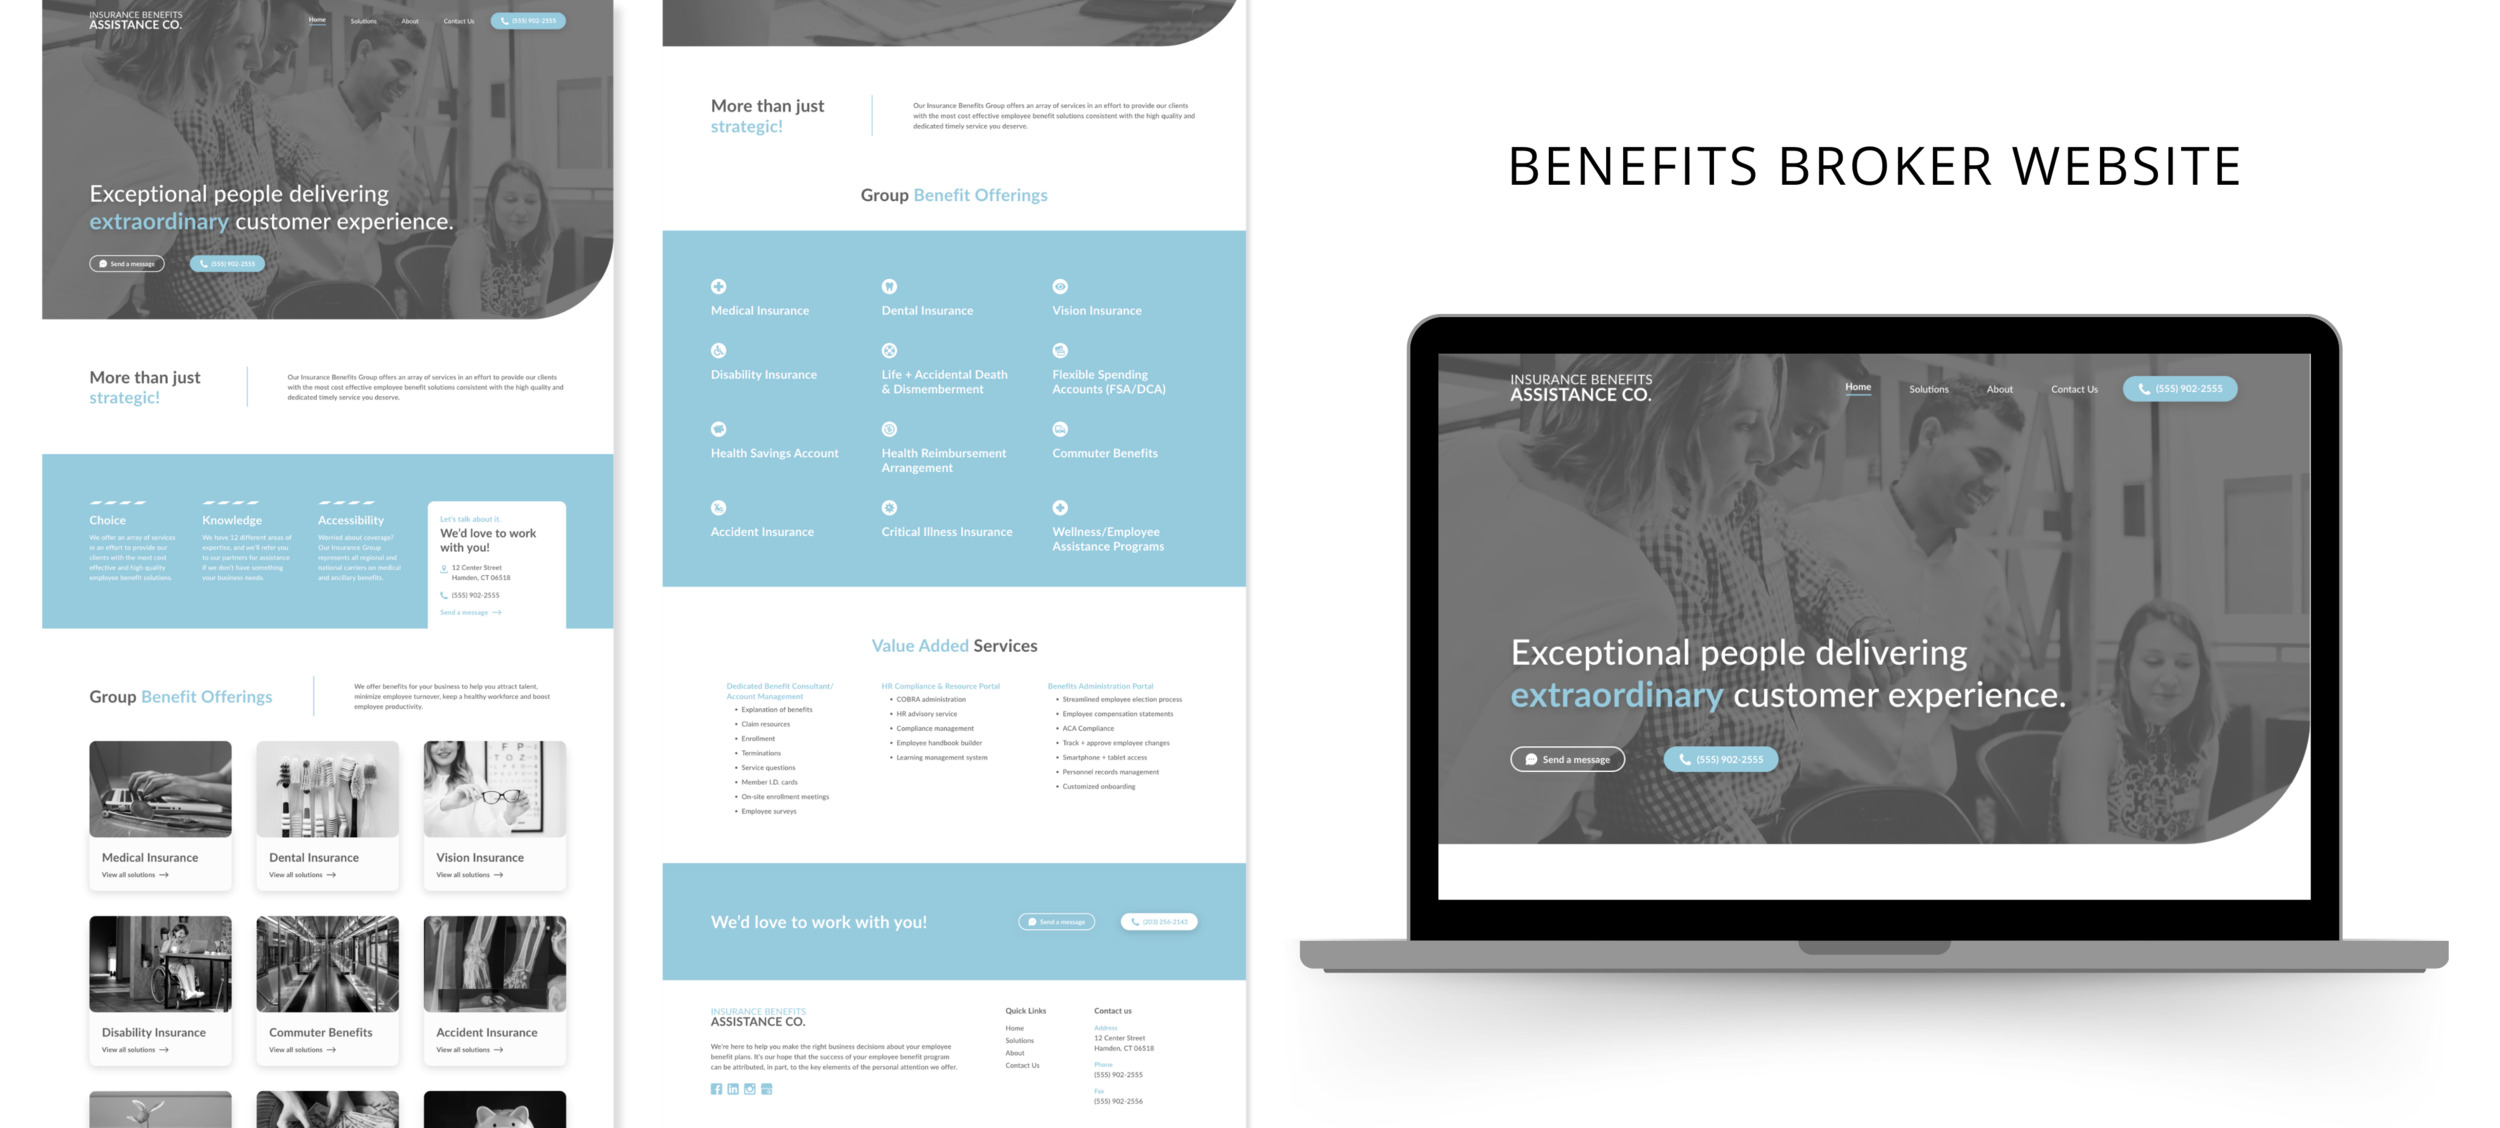 Benefits broker website Templates